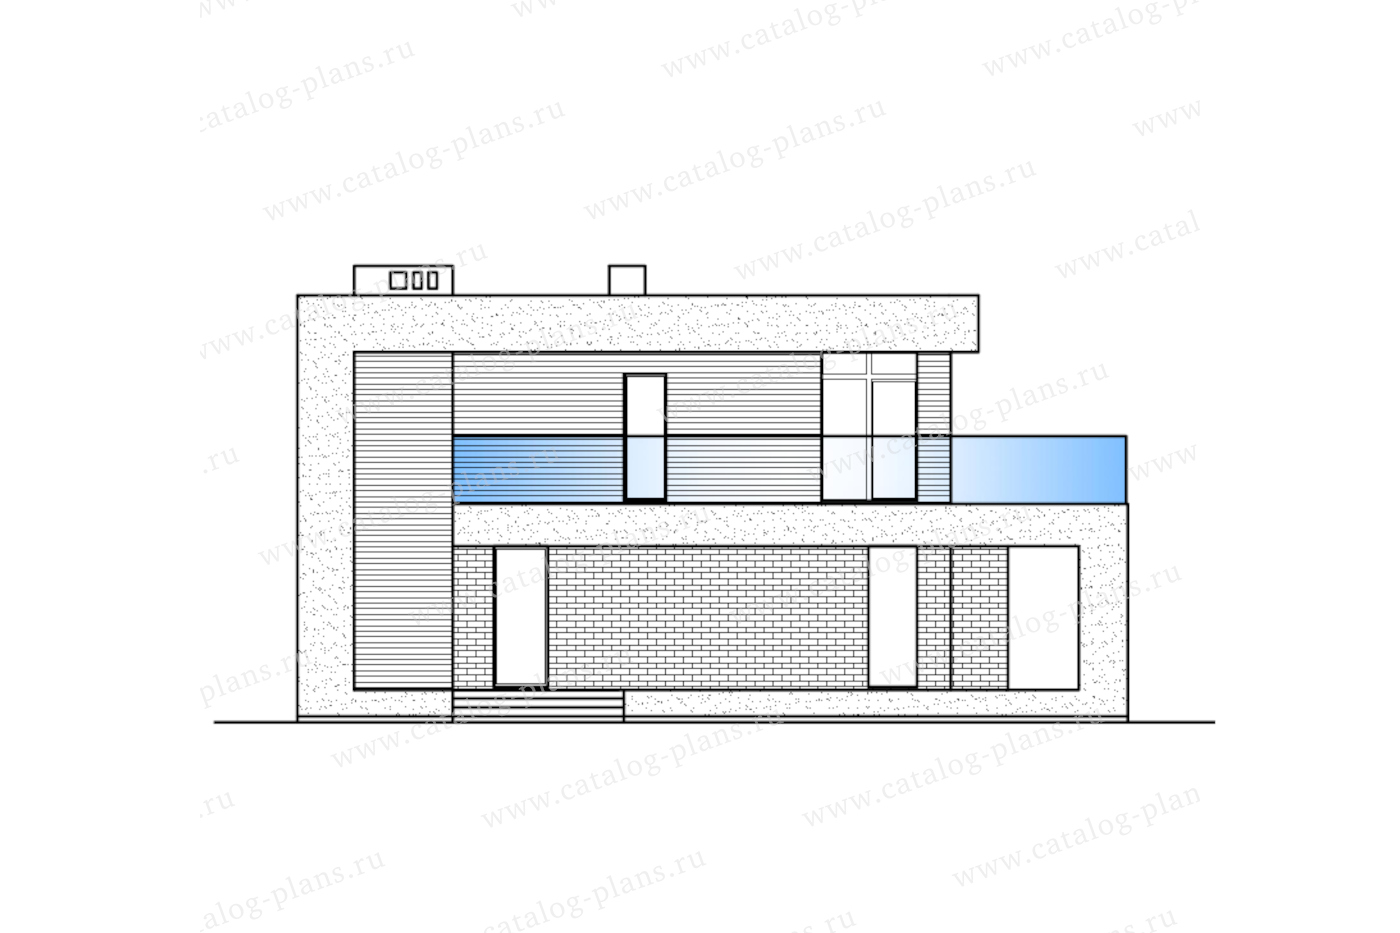 Проект 63-42Z, жилой дом, материал - газобетонные блоки 400, количество этажей - 2, архитектурный стиль - хай-тек, фундамент - монолитная ж/б плита